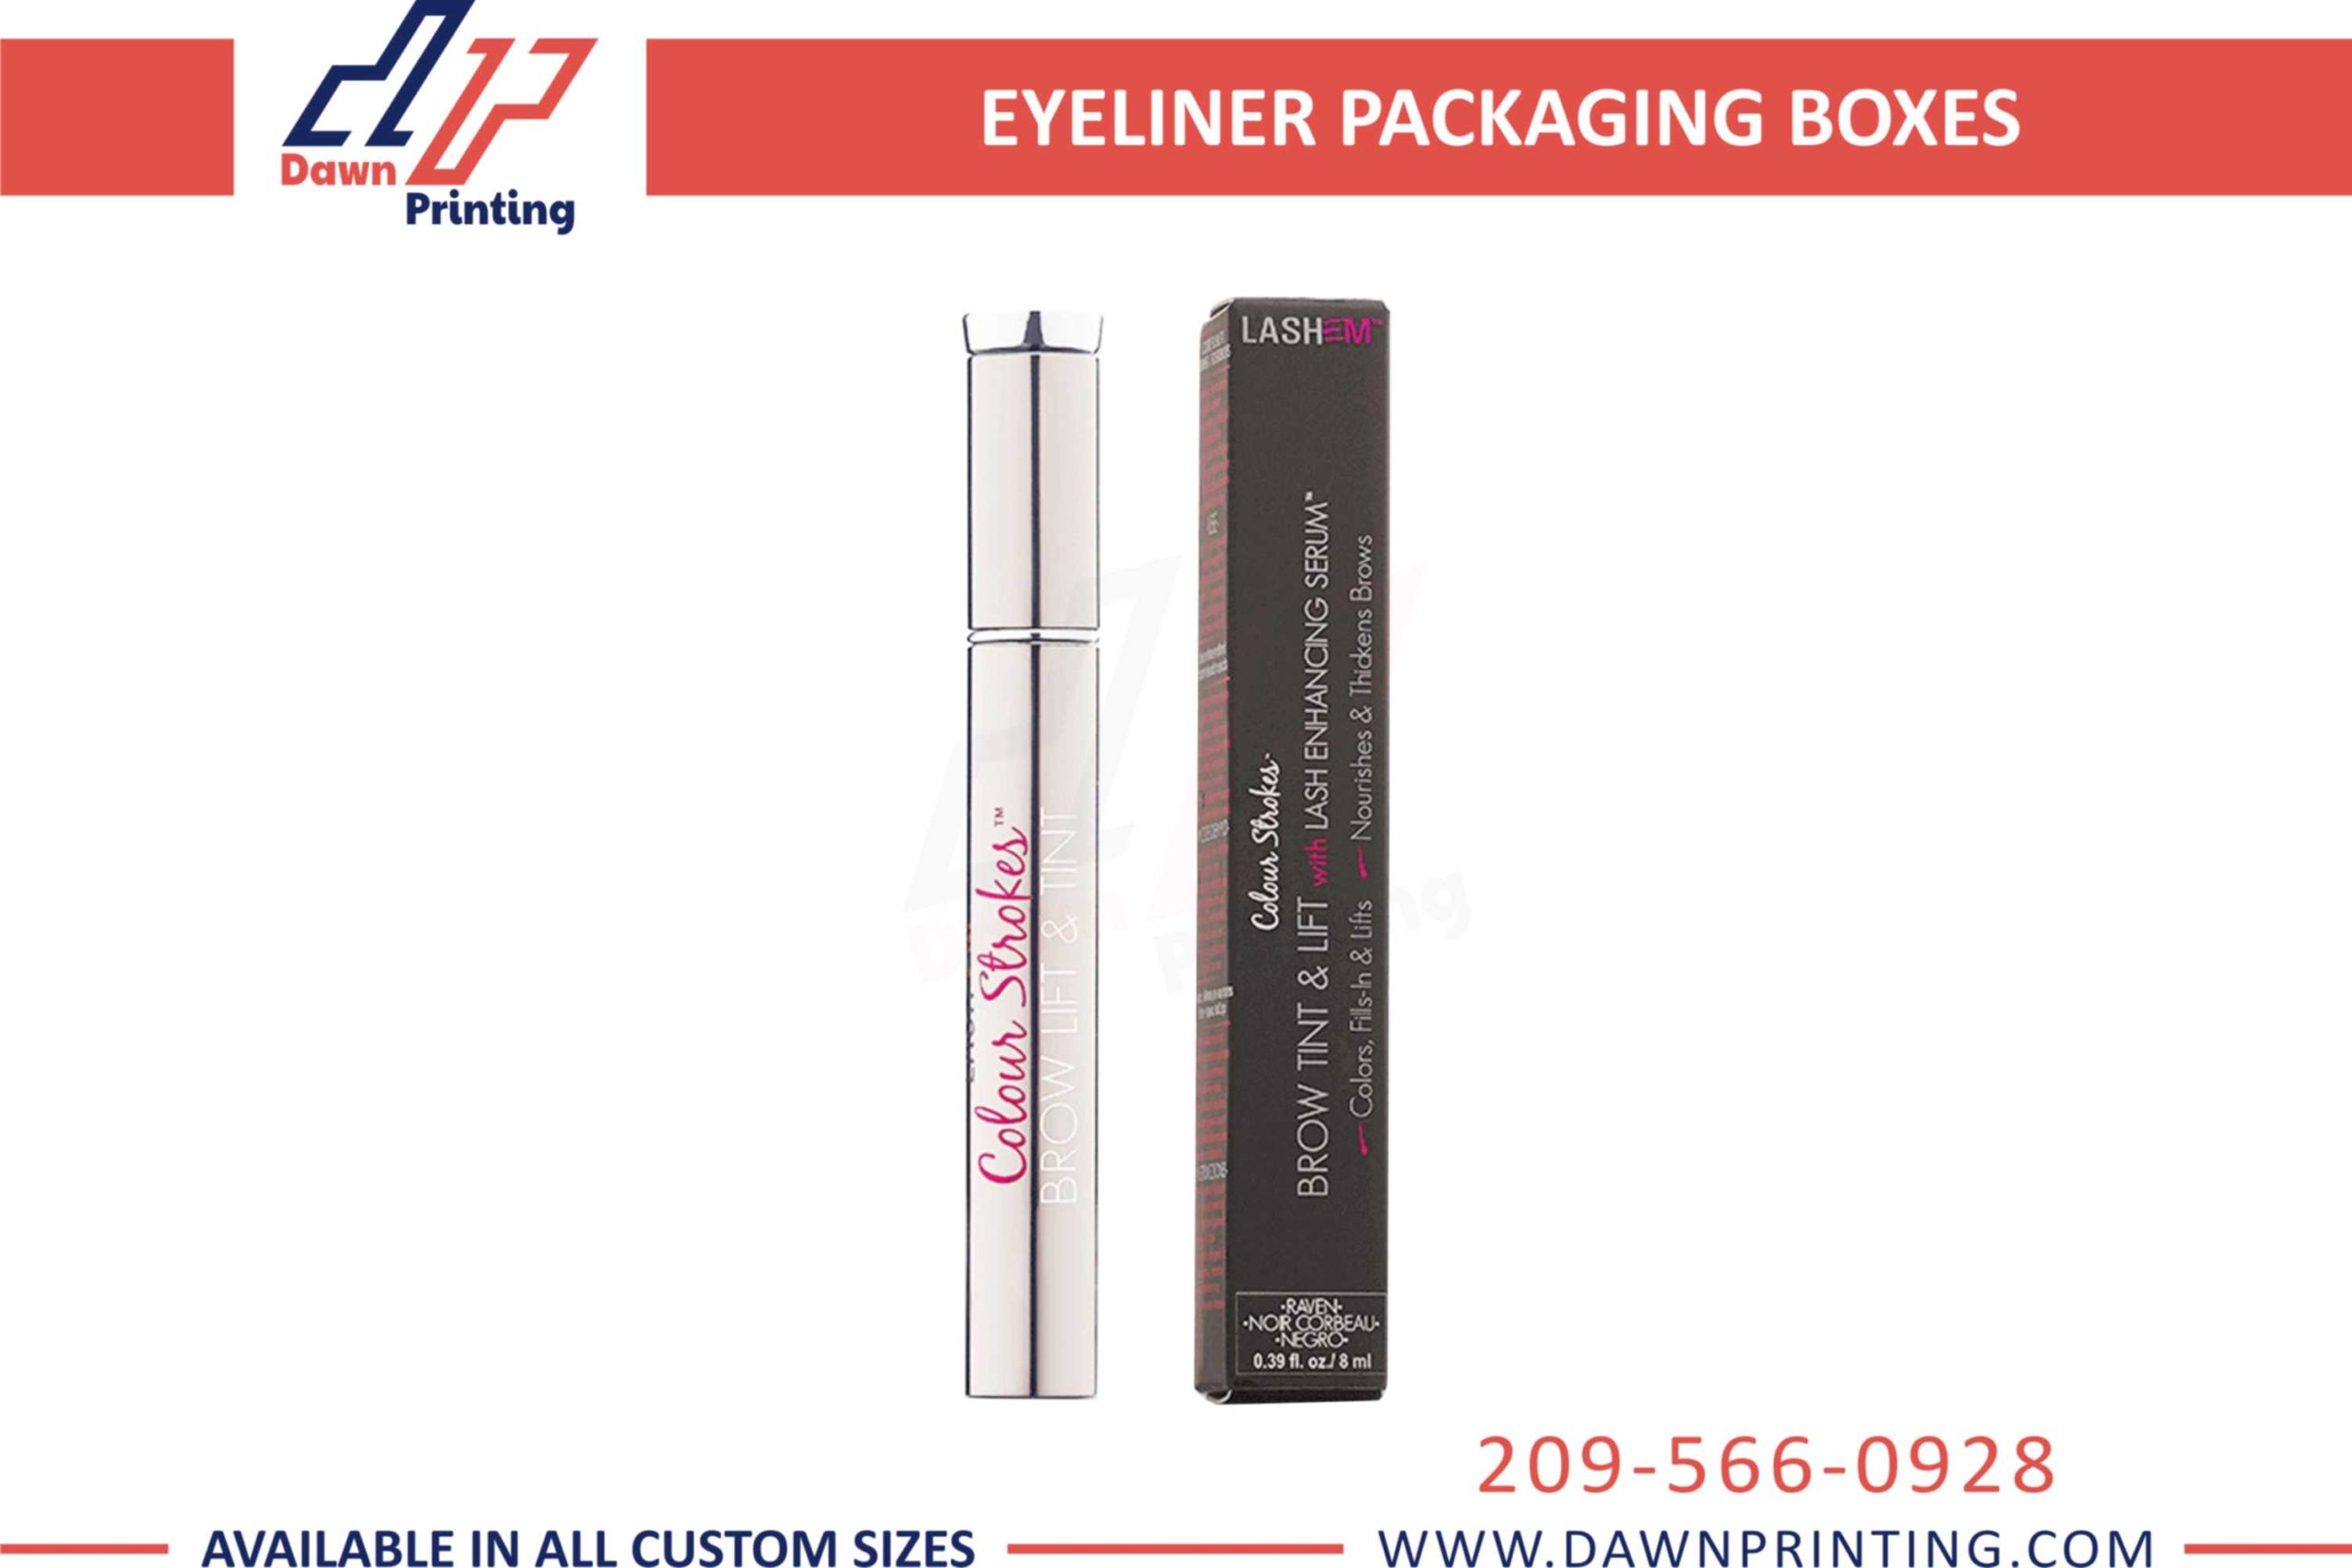 Eyeliner Packaging Boxes - Dawn Printing